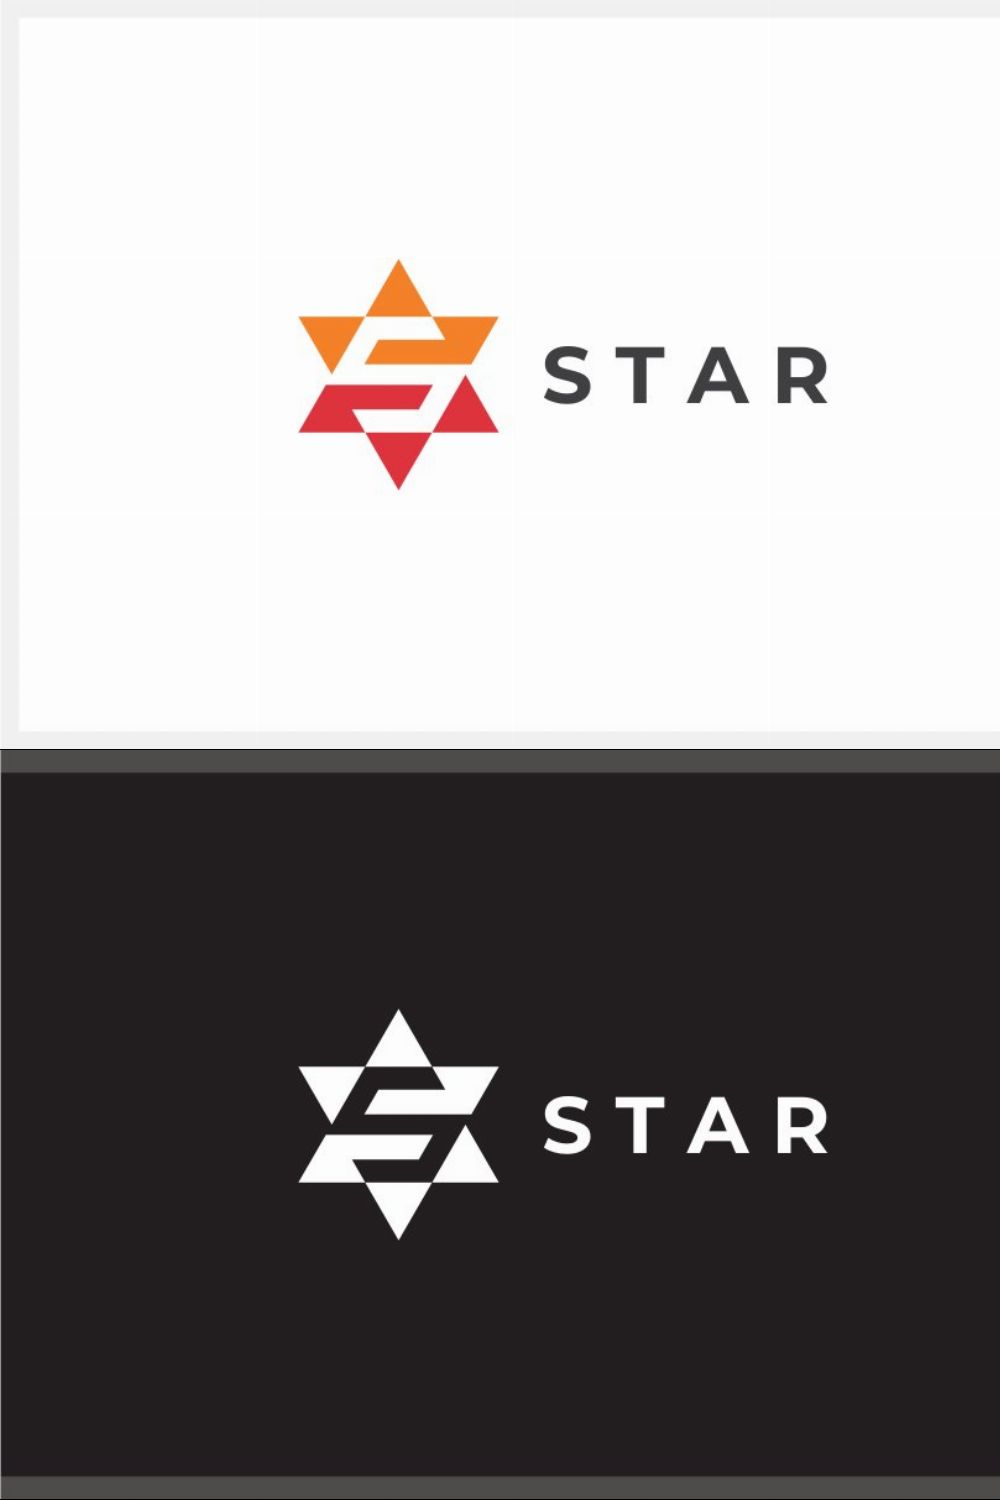 Star - Letter S Logo pinterest preview image.